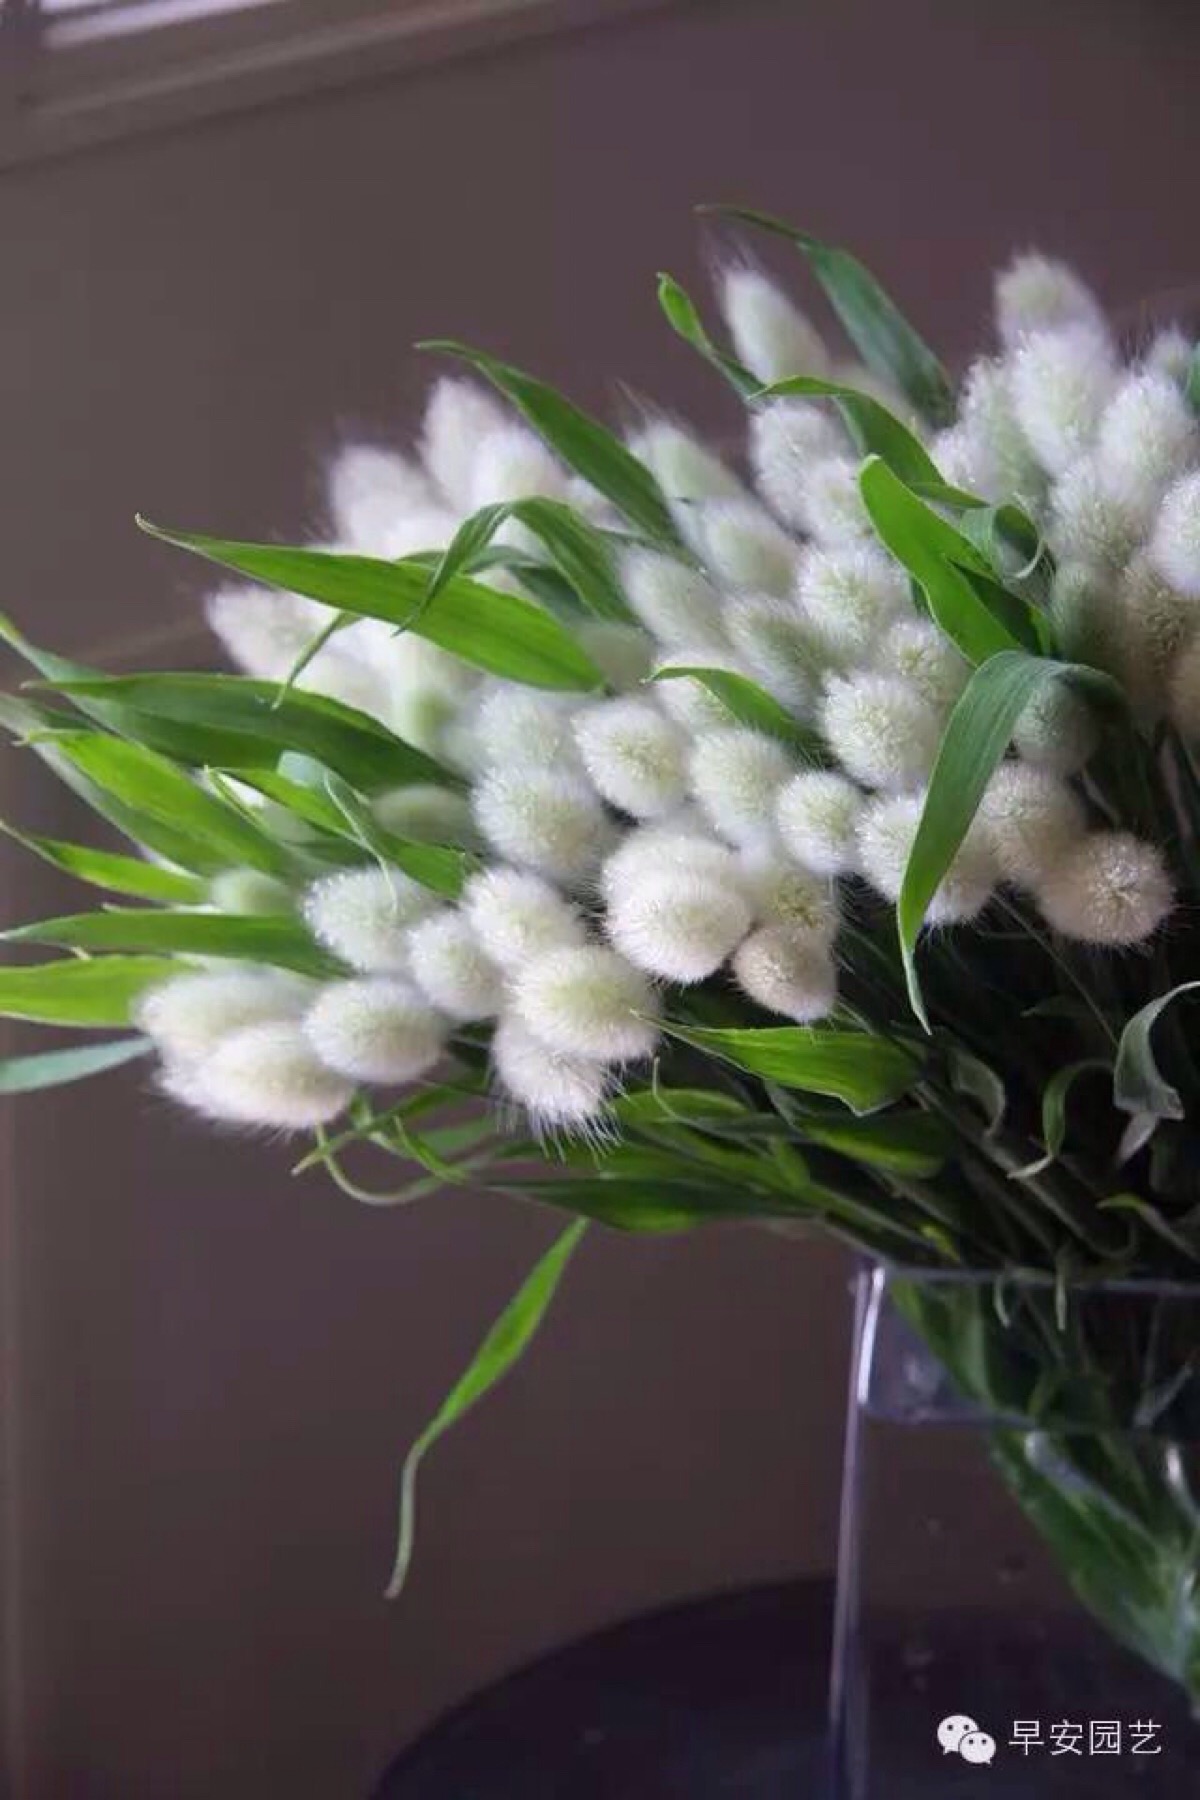 兔尾草是一年生草本植物,丛生,圆锥花序,卵形,柔软,小穗多,花白色